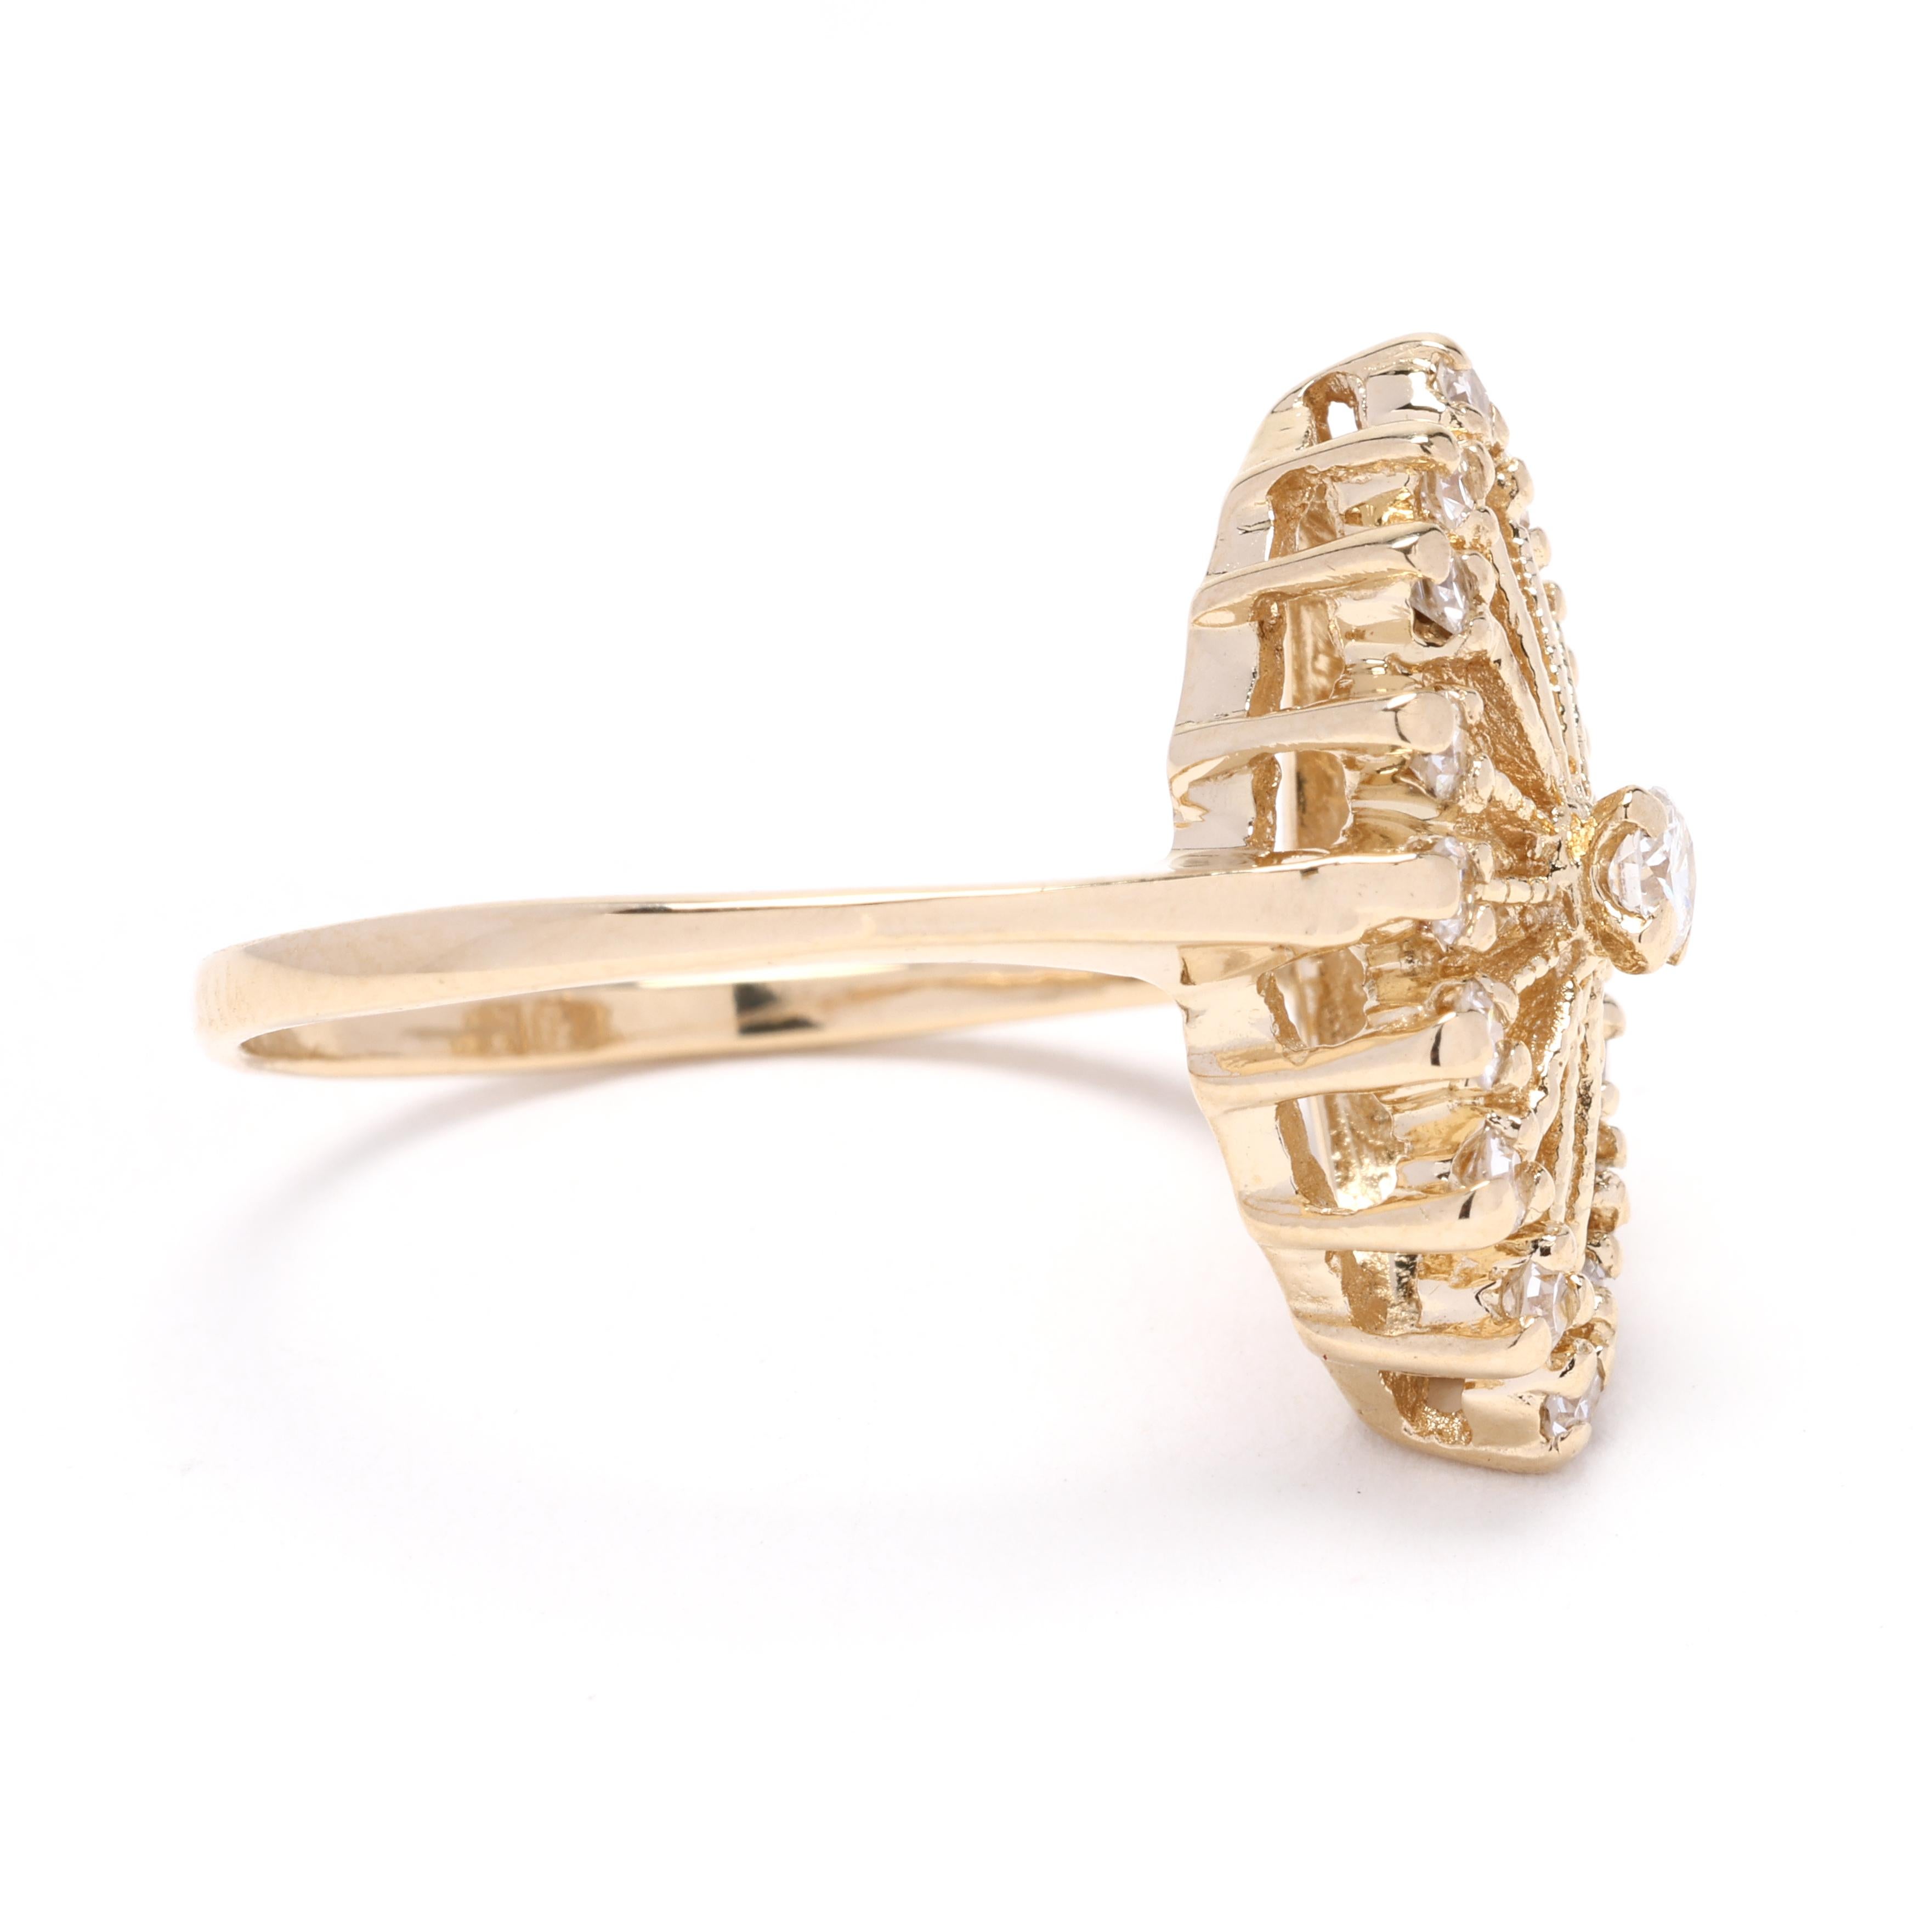 Dieser elegante 0,33ctw Diamant-Navette-Ring ist eine atemberaubende Ergänzung für jede Schmucksammlung. Dieser Ring aus 14-karätigem Gelbgold hat ein einzigartiges Navette-Design, das sowohl klassisch als auch modern ist. Der auffällige